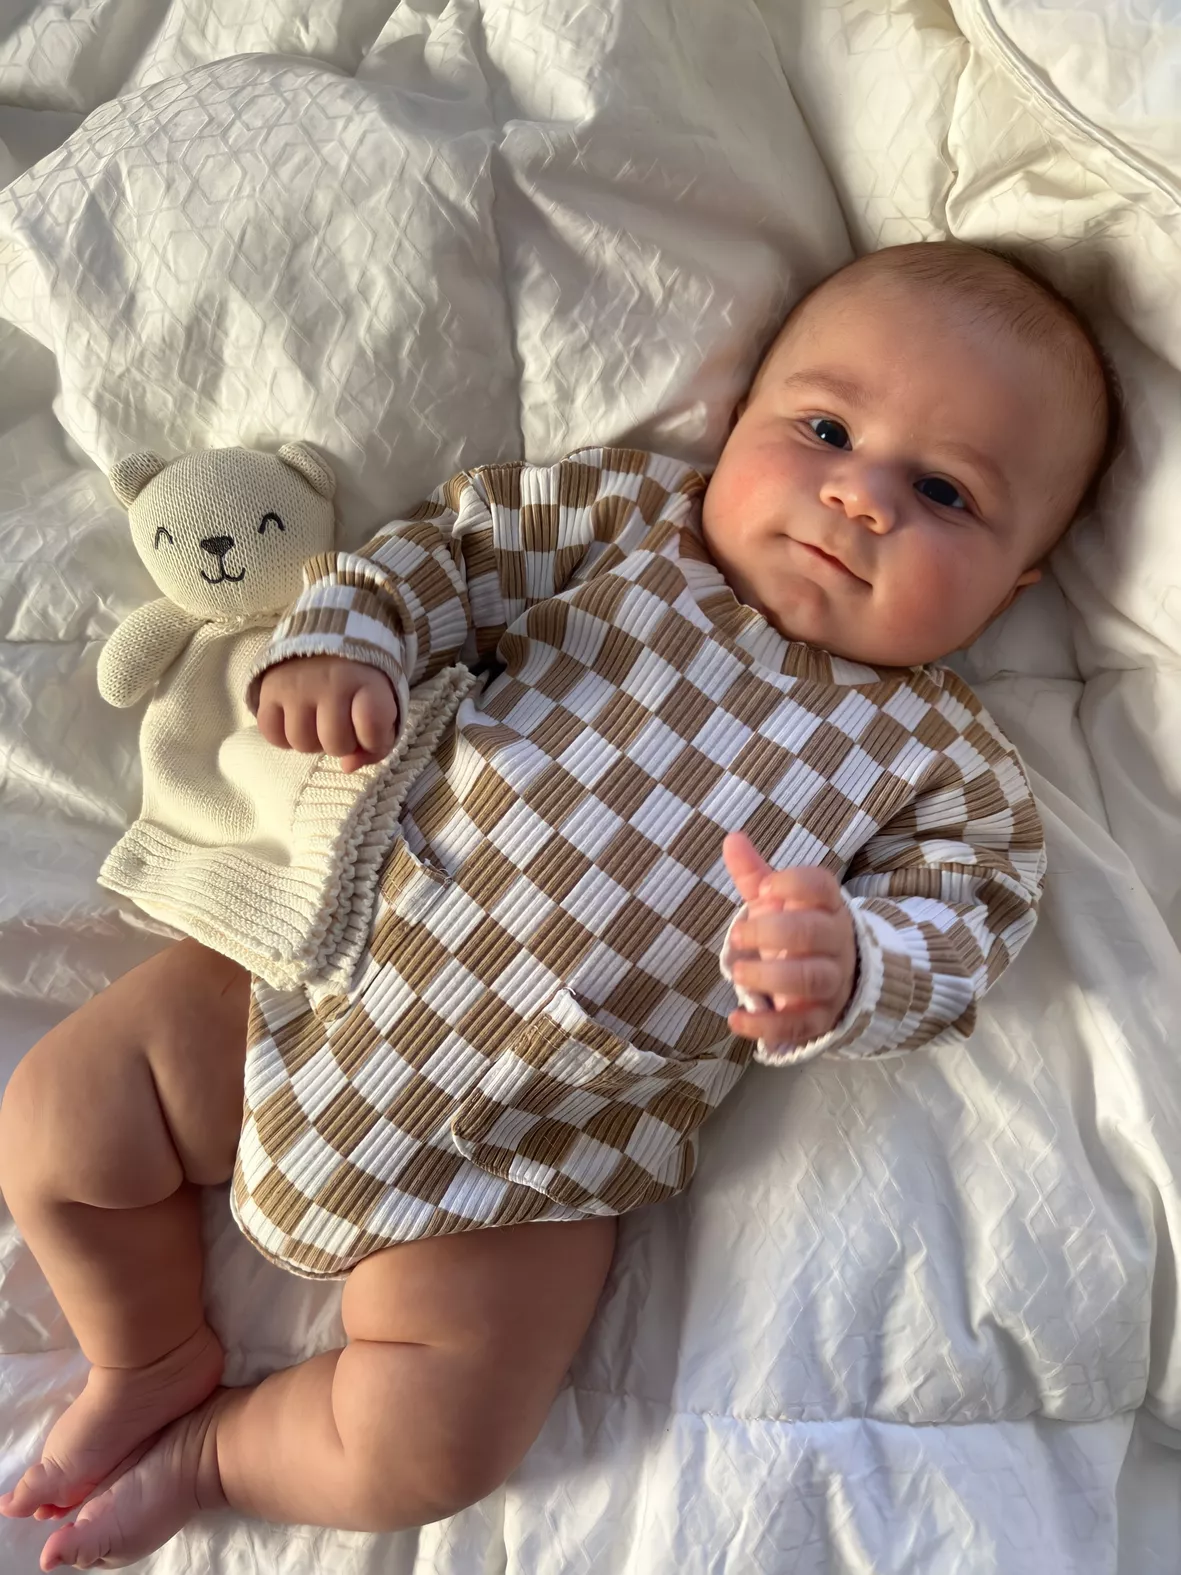  Kaipiclos Baby Boy Clothes Cute Checkerboard Plaids